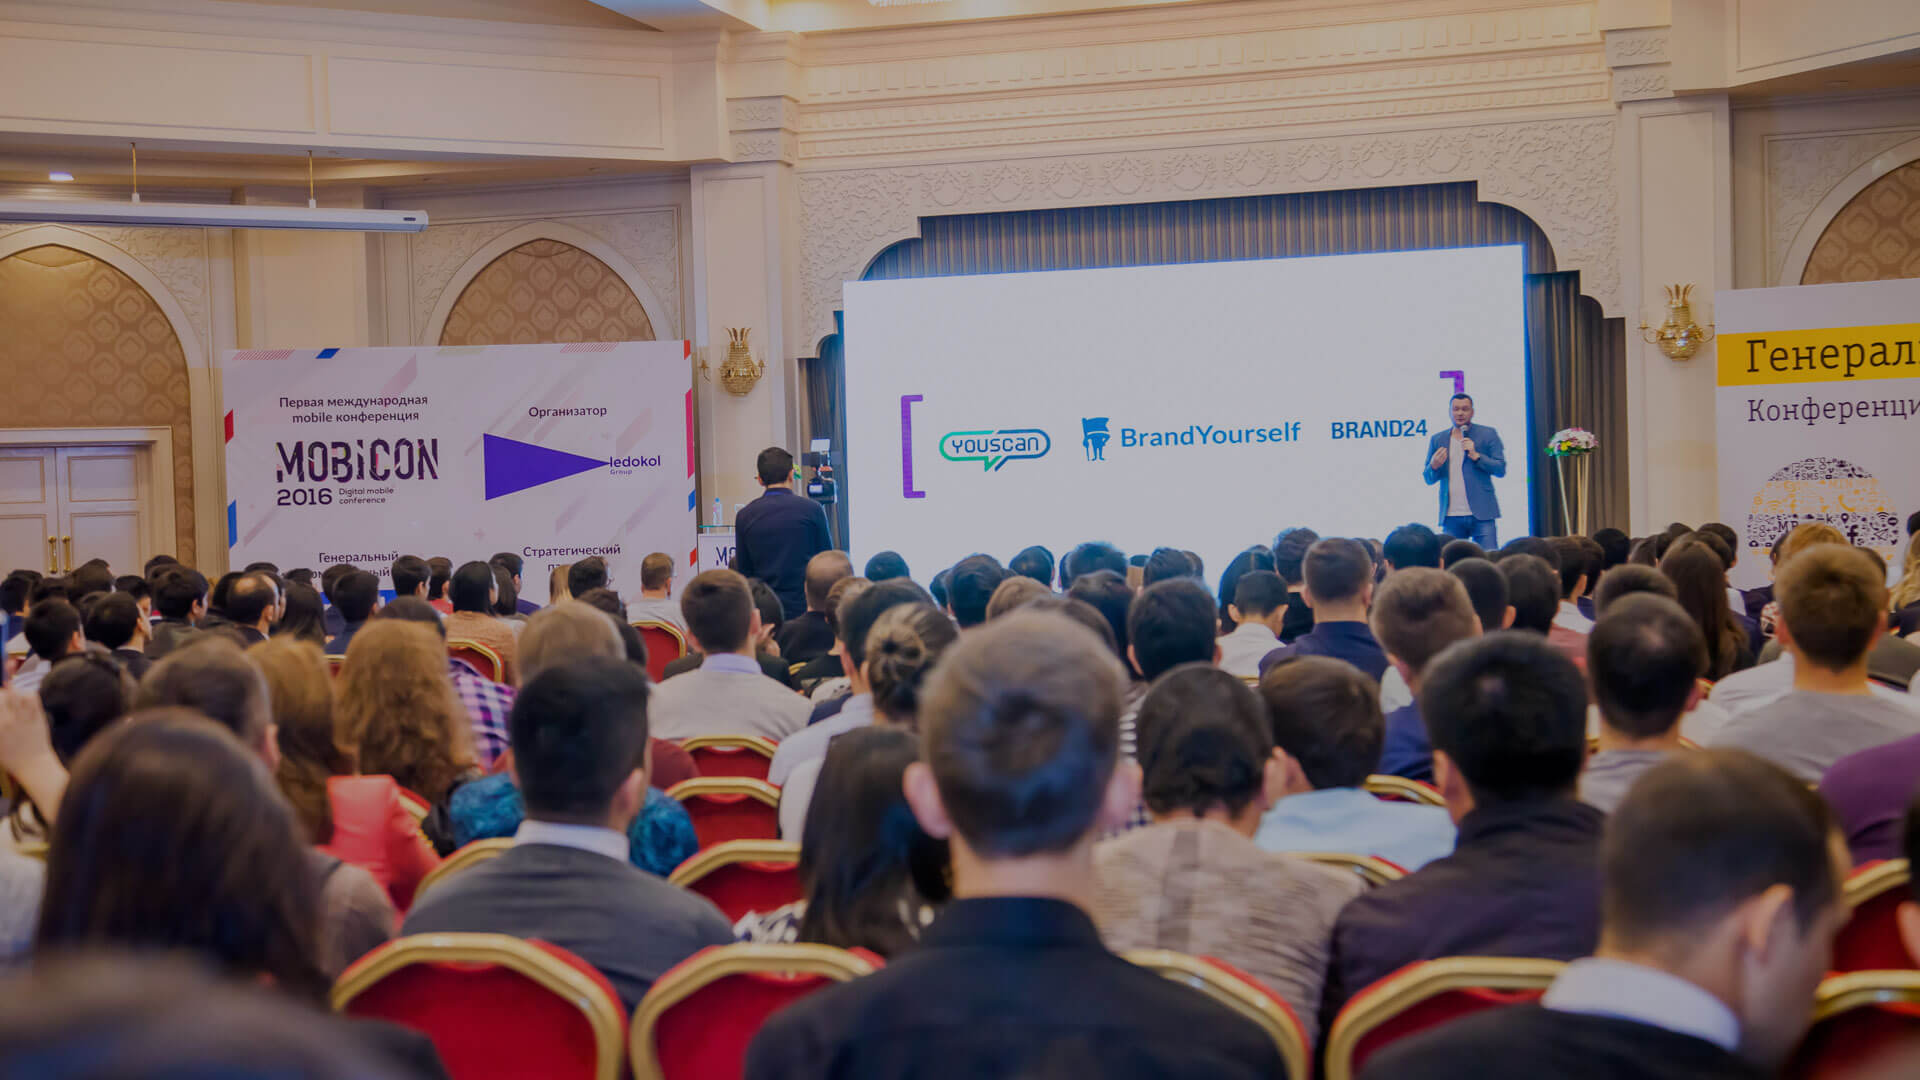 В Ташкенте пройдет ежегодная мобильная конференция Mobicon 2018